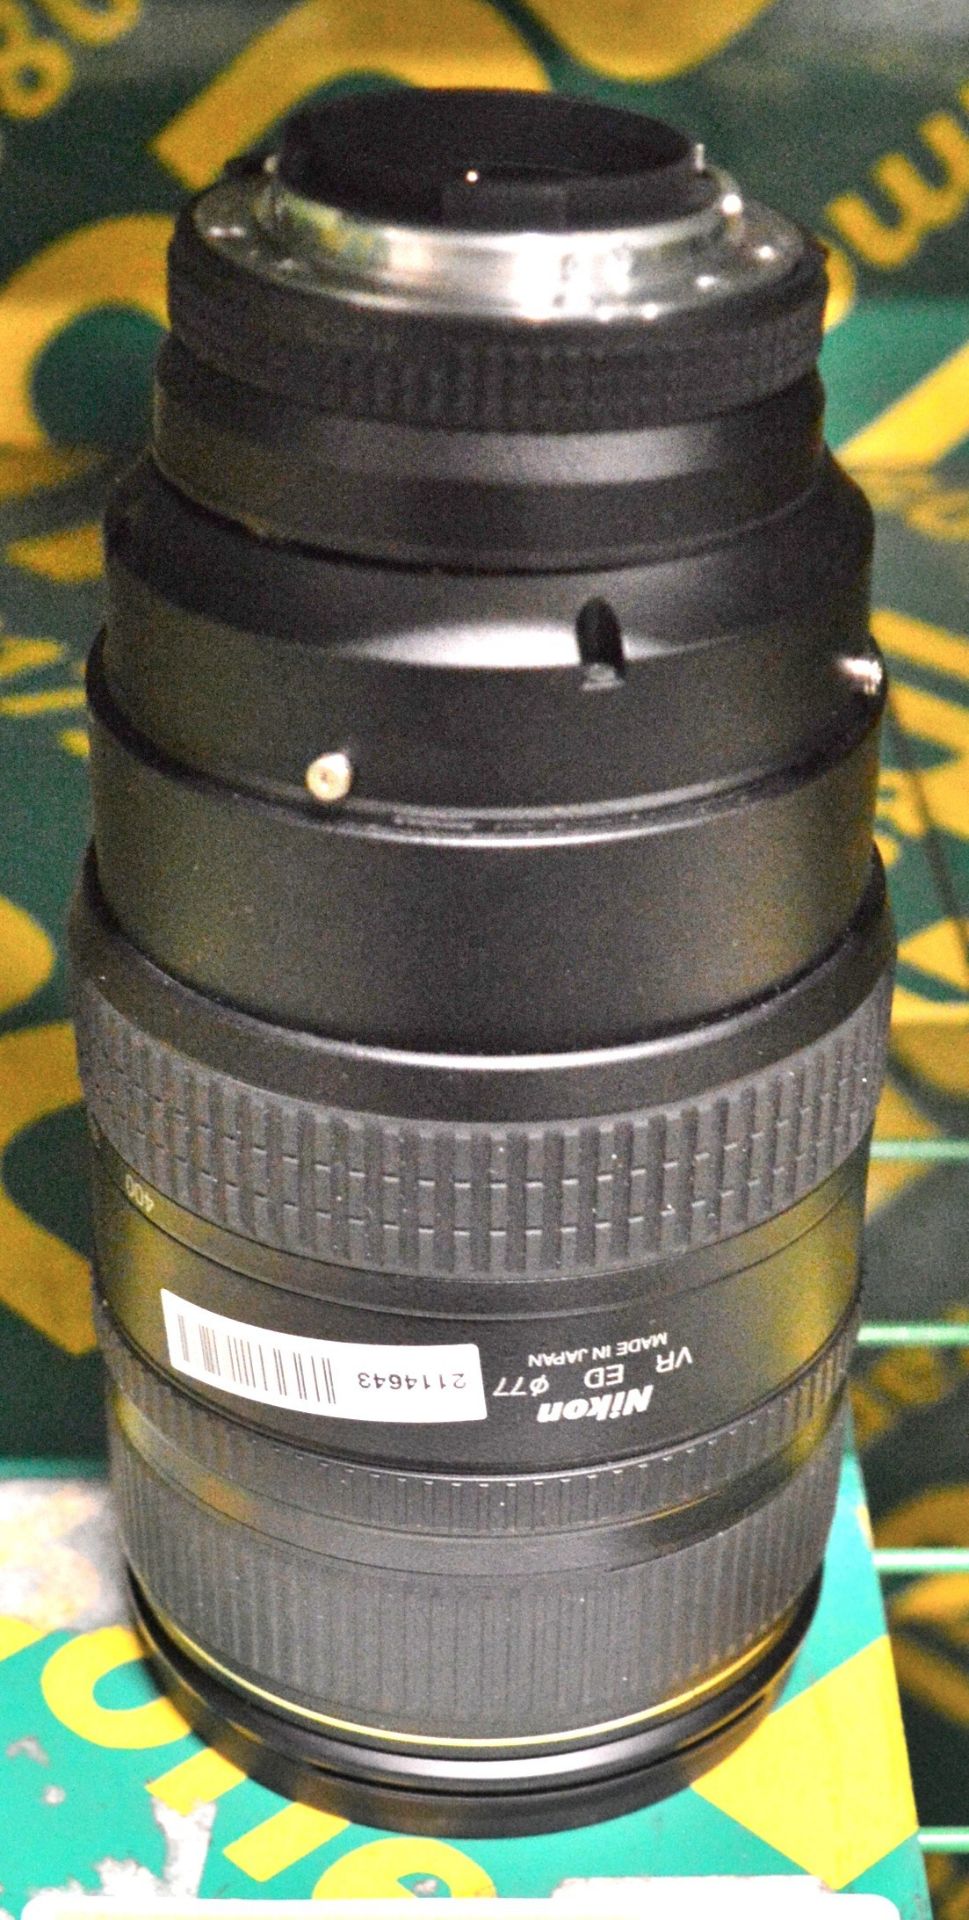 Nikon Lens AF-Nikkor 80-400mm 1:4.5-5.6D - Serial No. 412575.